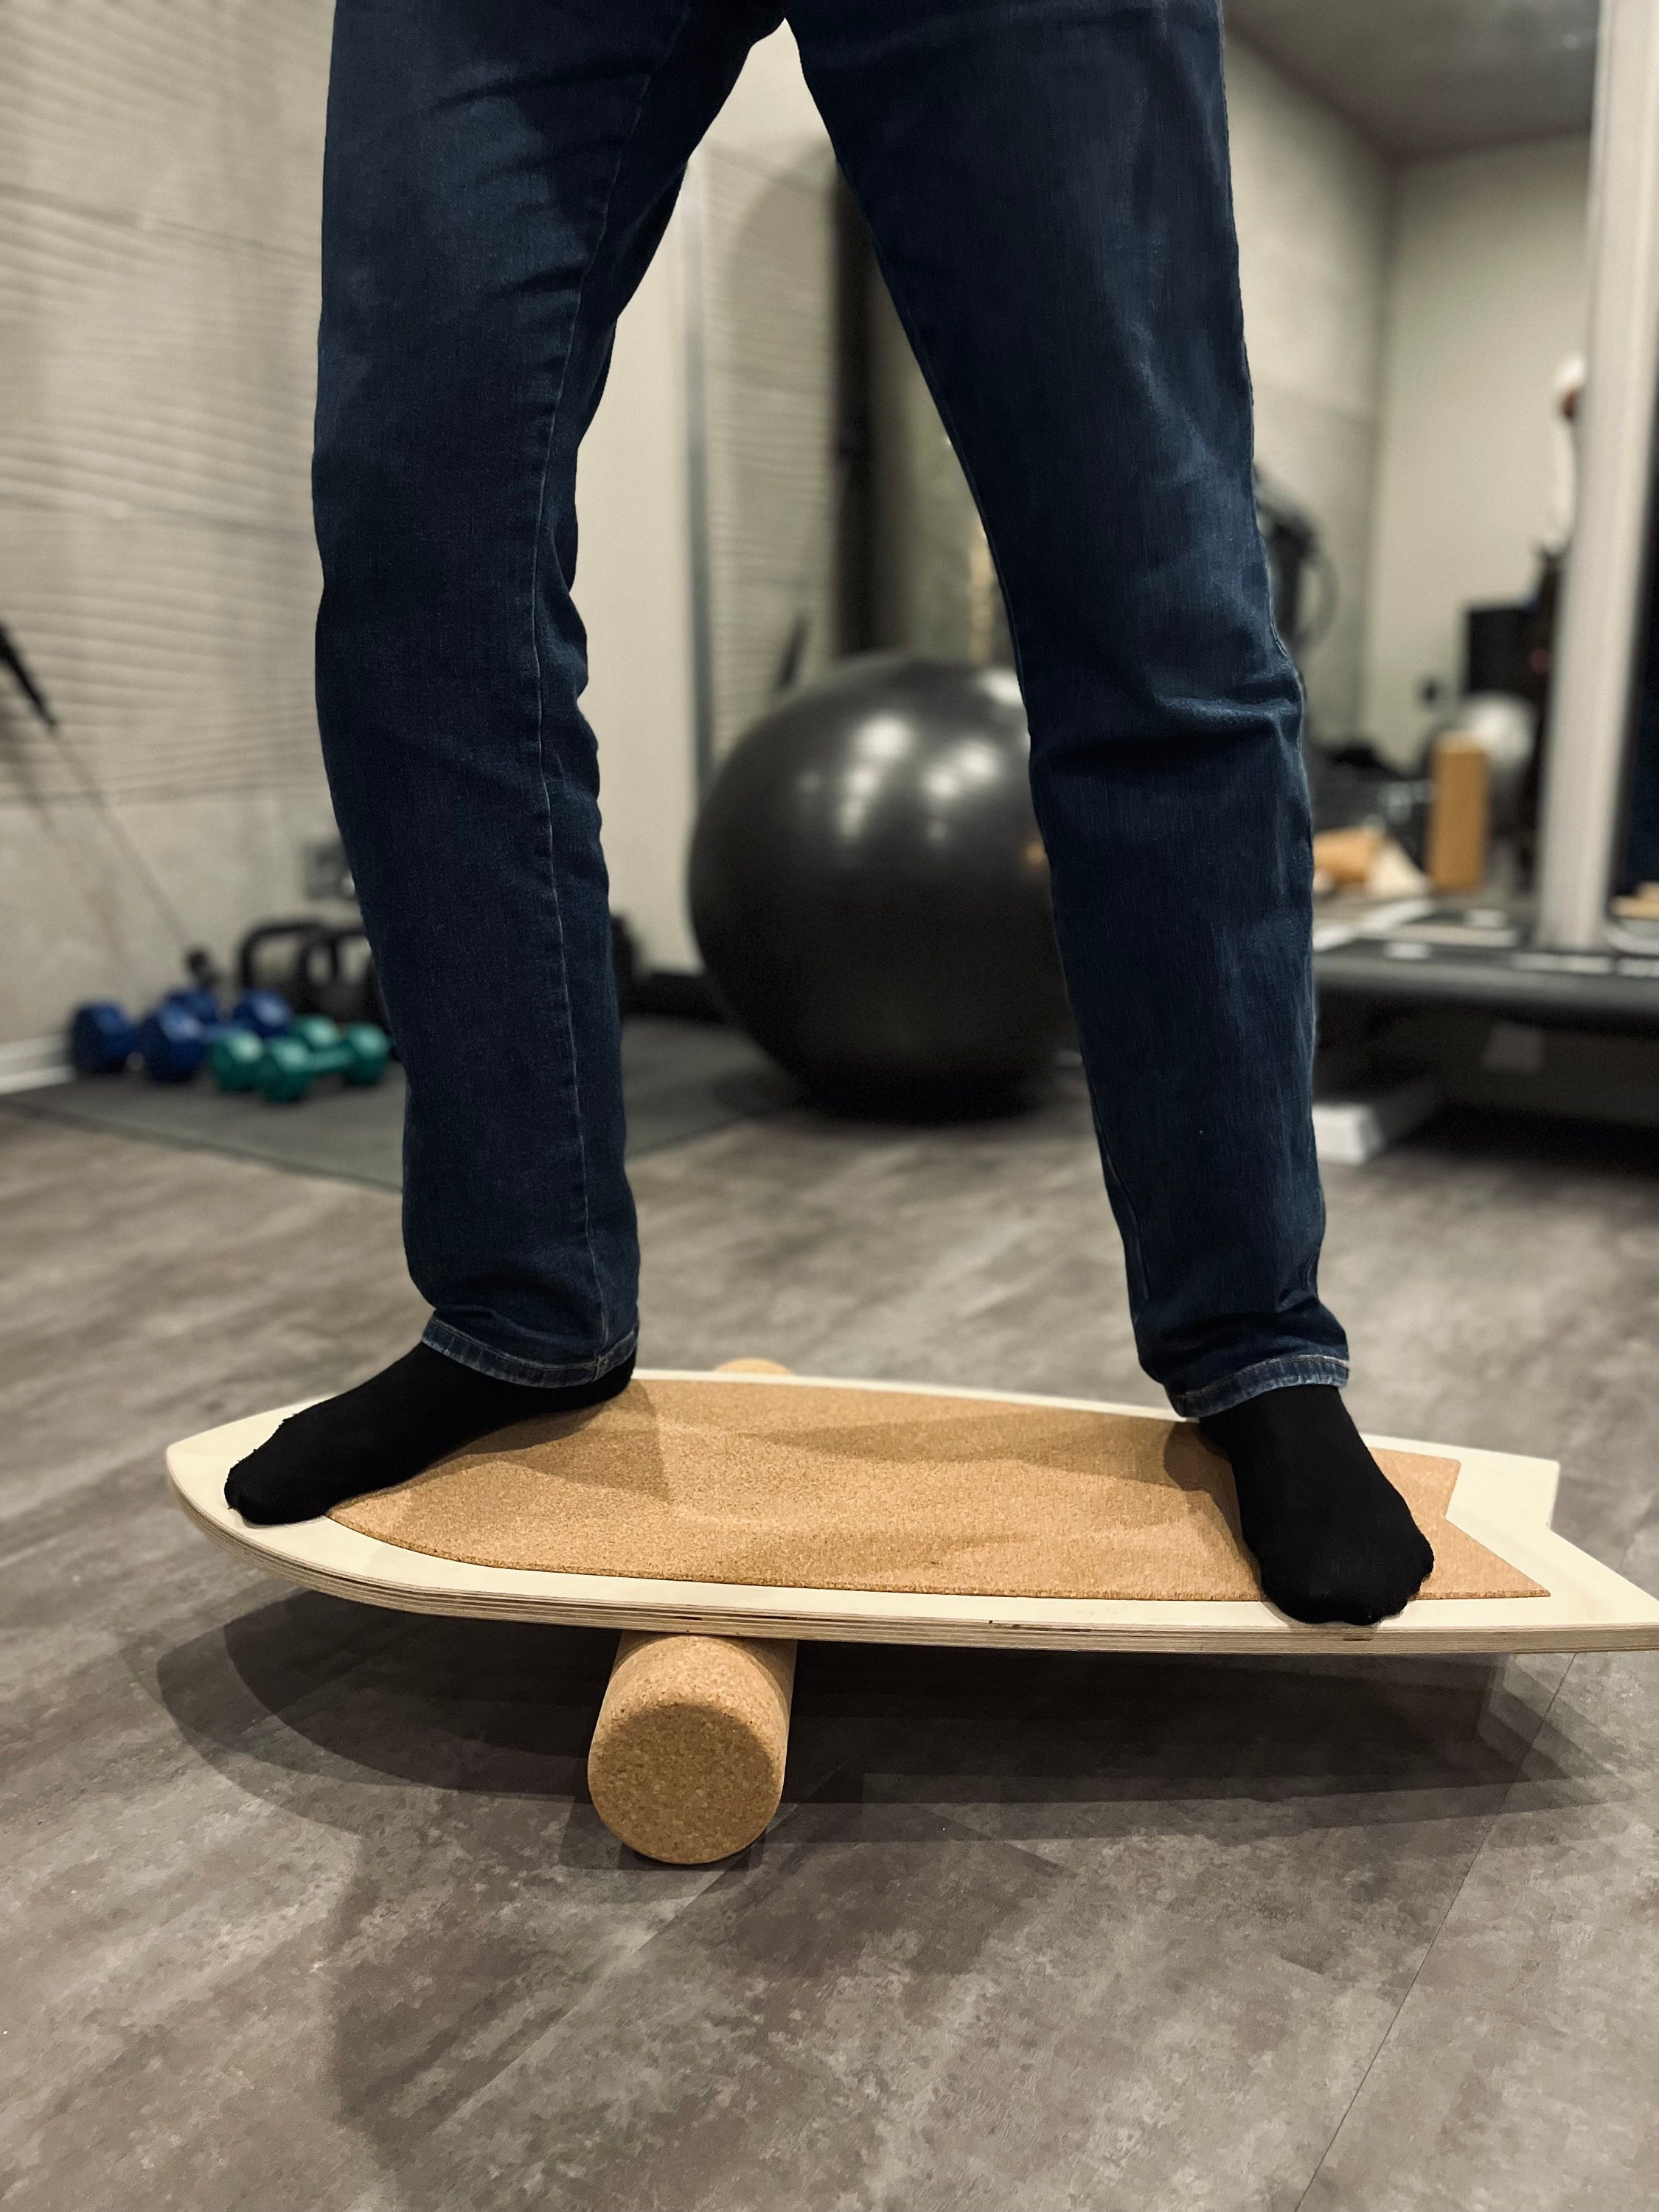 Surf Balance Board With Cork Pad & Cork Roller 88x32cm Balance Board Wobble  Board Coordination Training Balance 